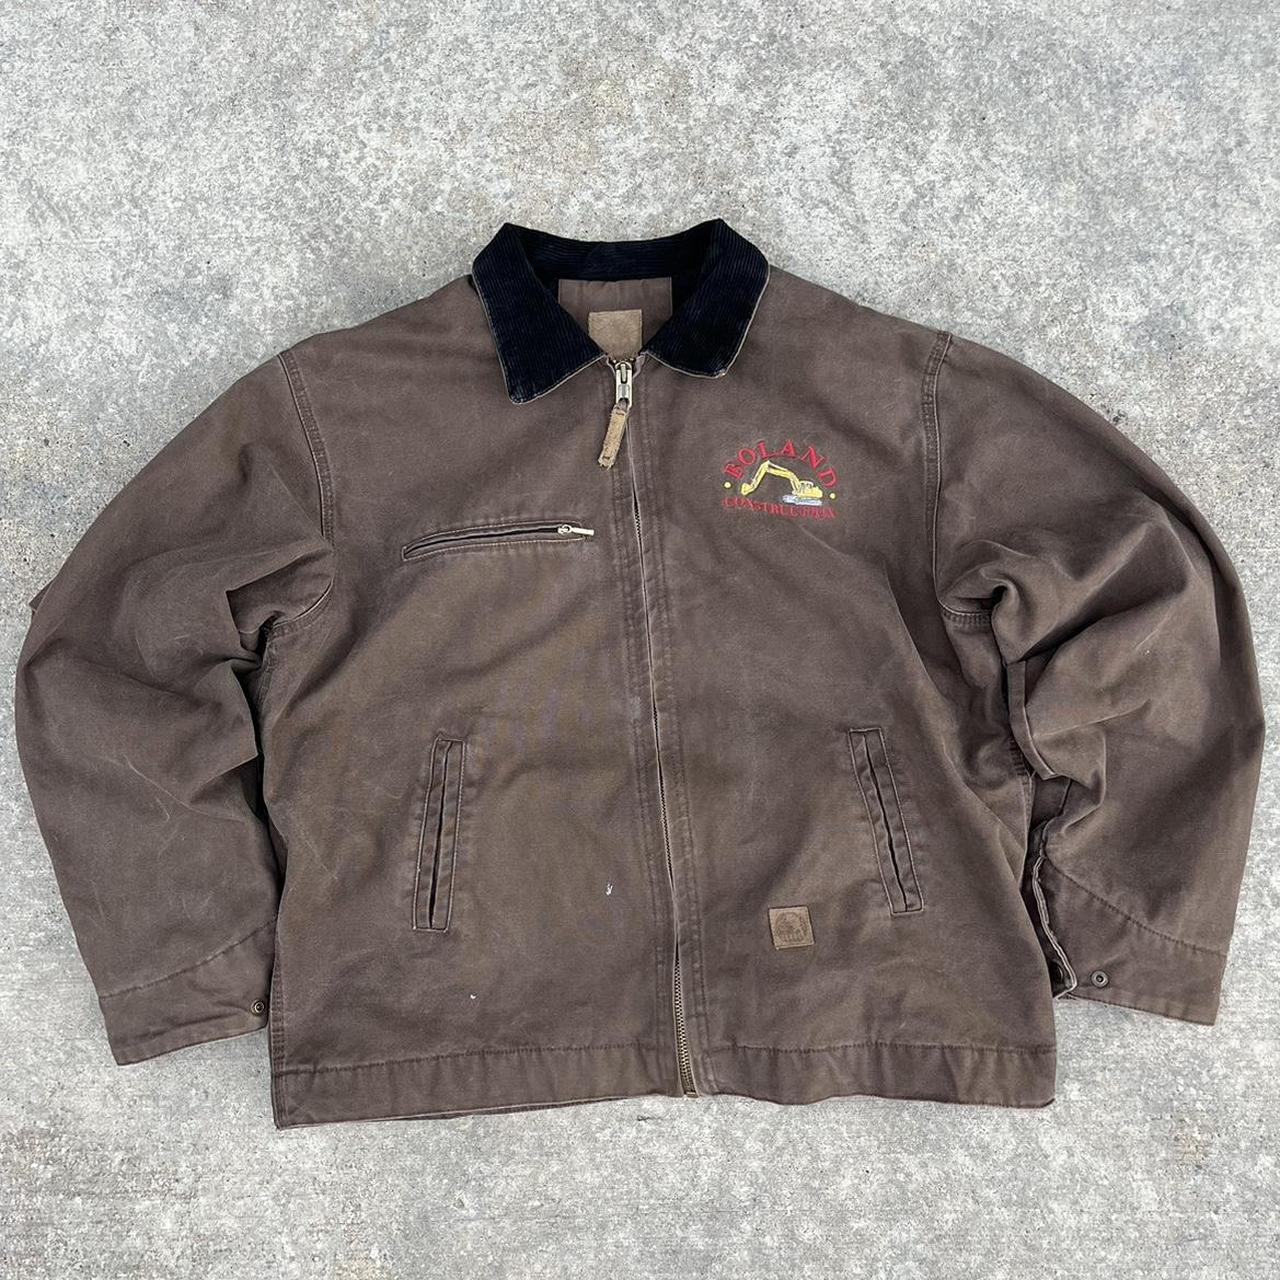 Vintage 90s Carhartt Detroit Jacket Style Berne... - Depop